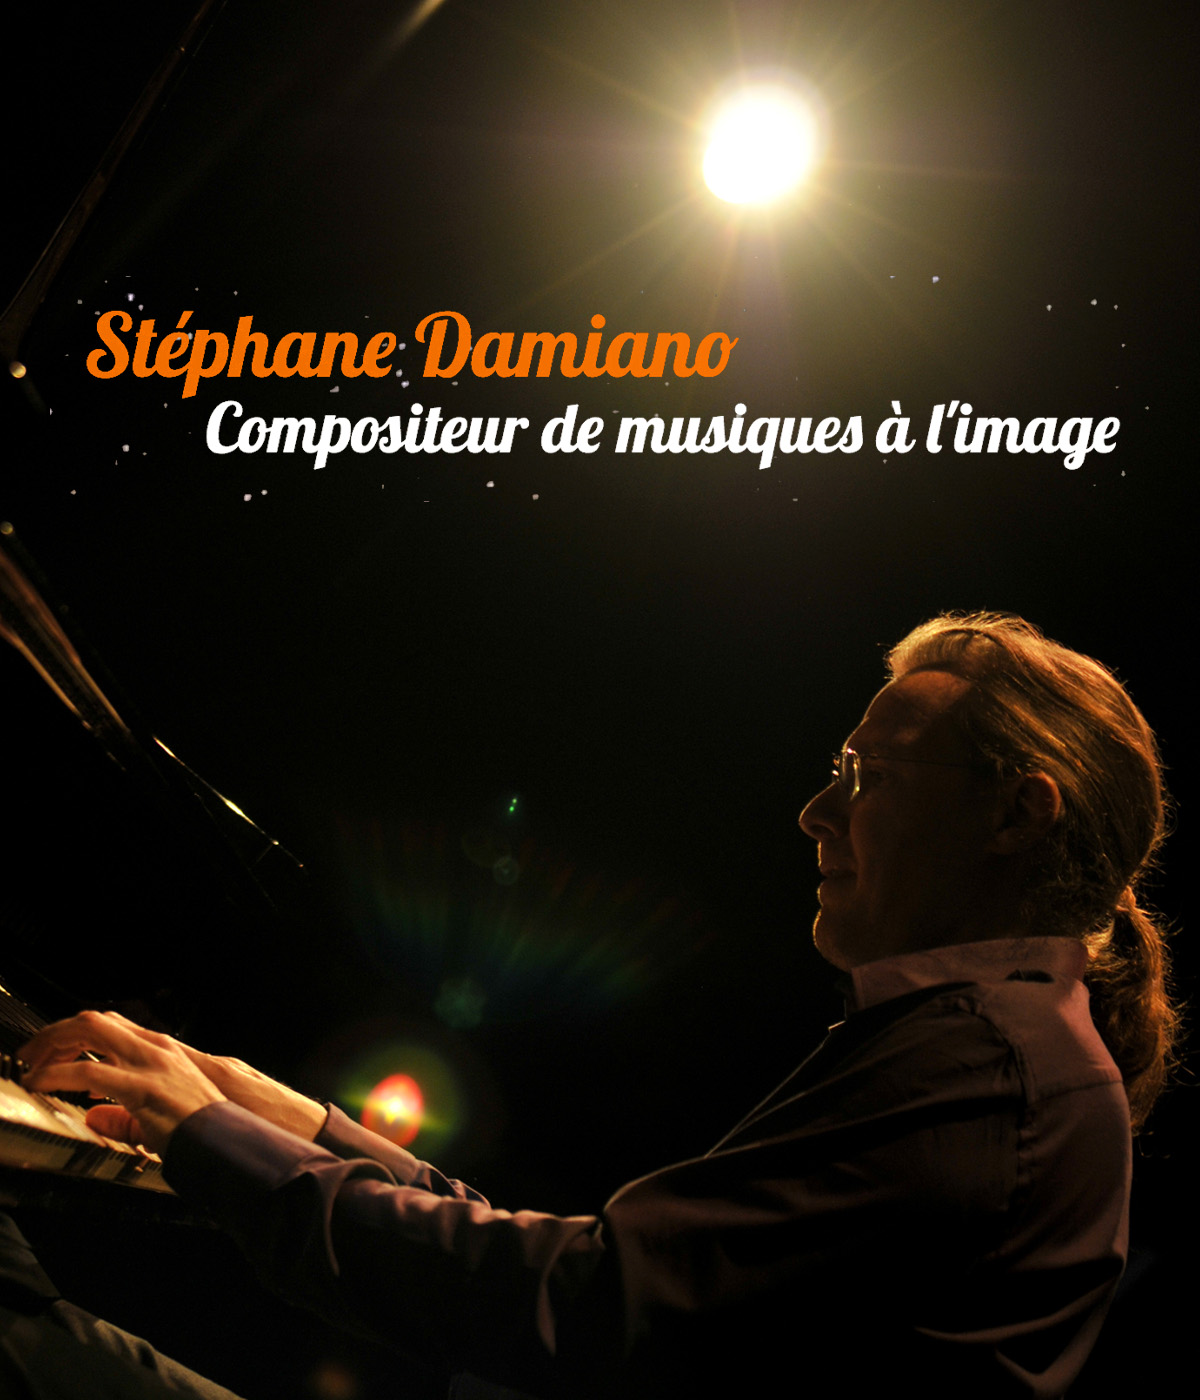 Visuel extrait du site web musical créé pour Stéphane Damiano par Caramel & Paprika - Portrait de Stéphane (photo © Stéphane Damiano)